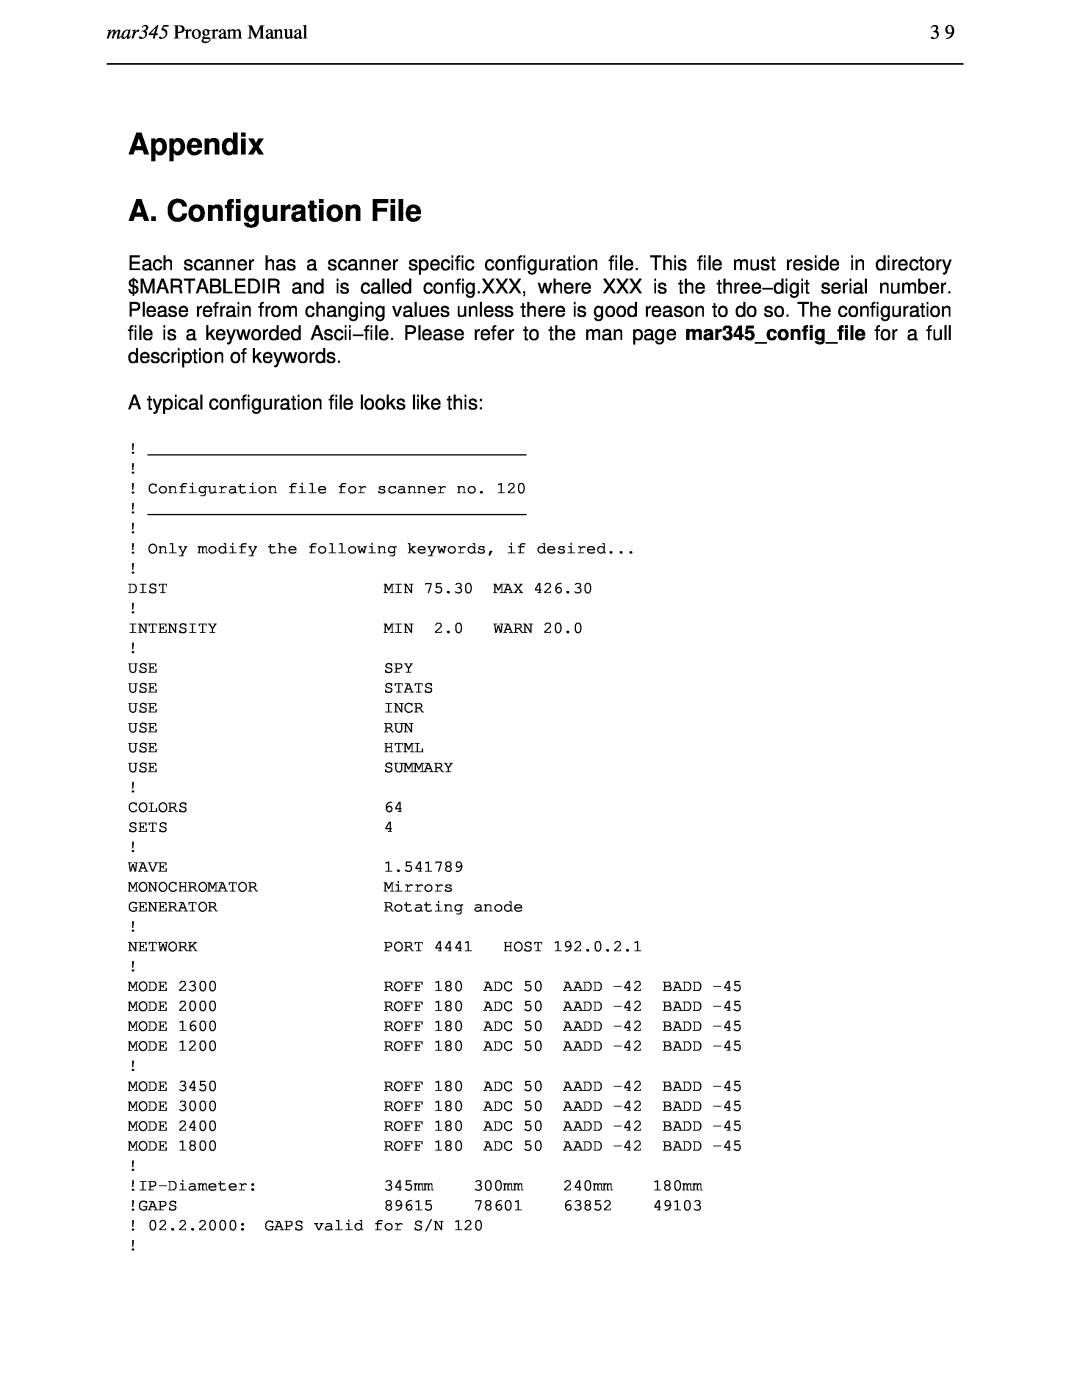 Compaq manual Appendix A. Configuration File, mar345 Program Manual 